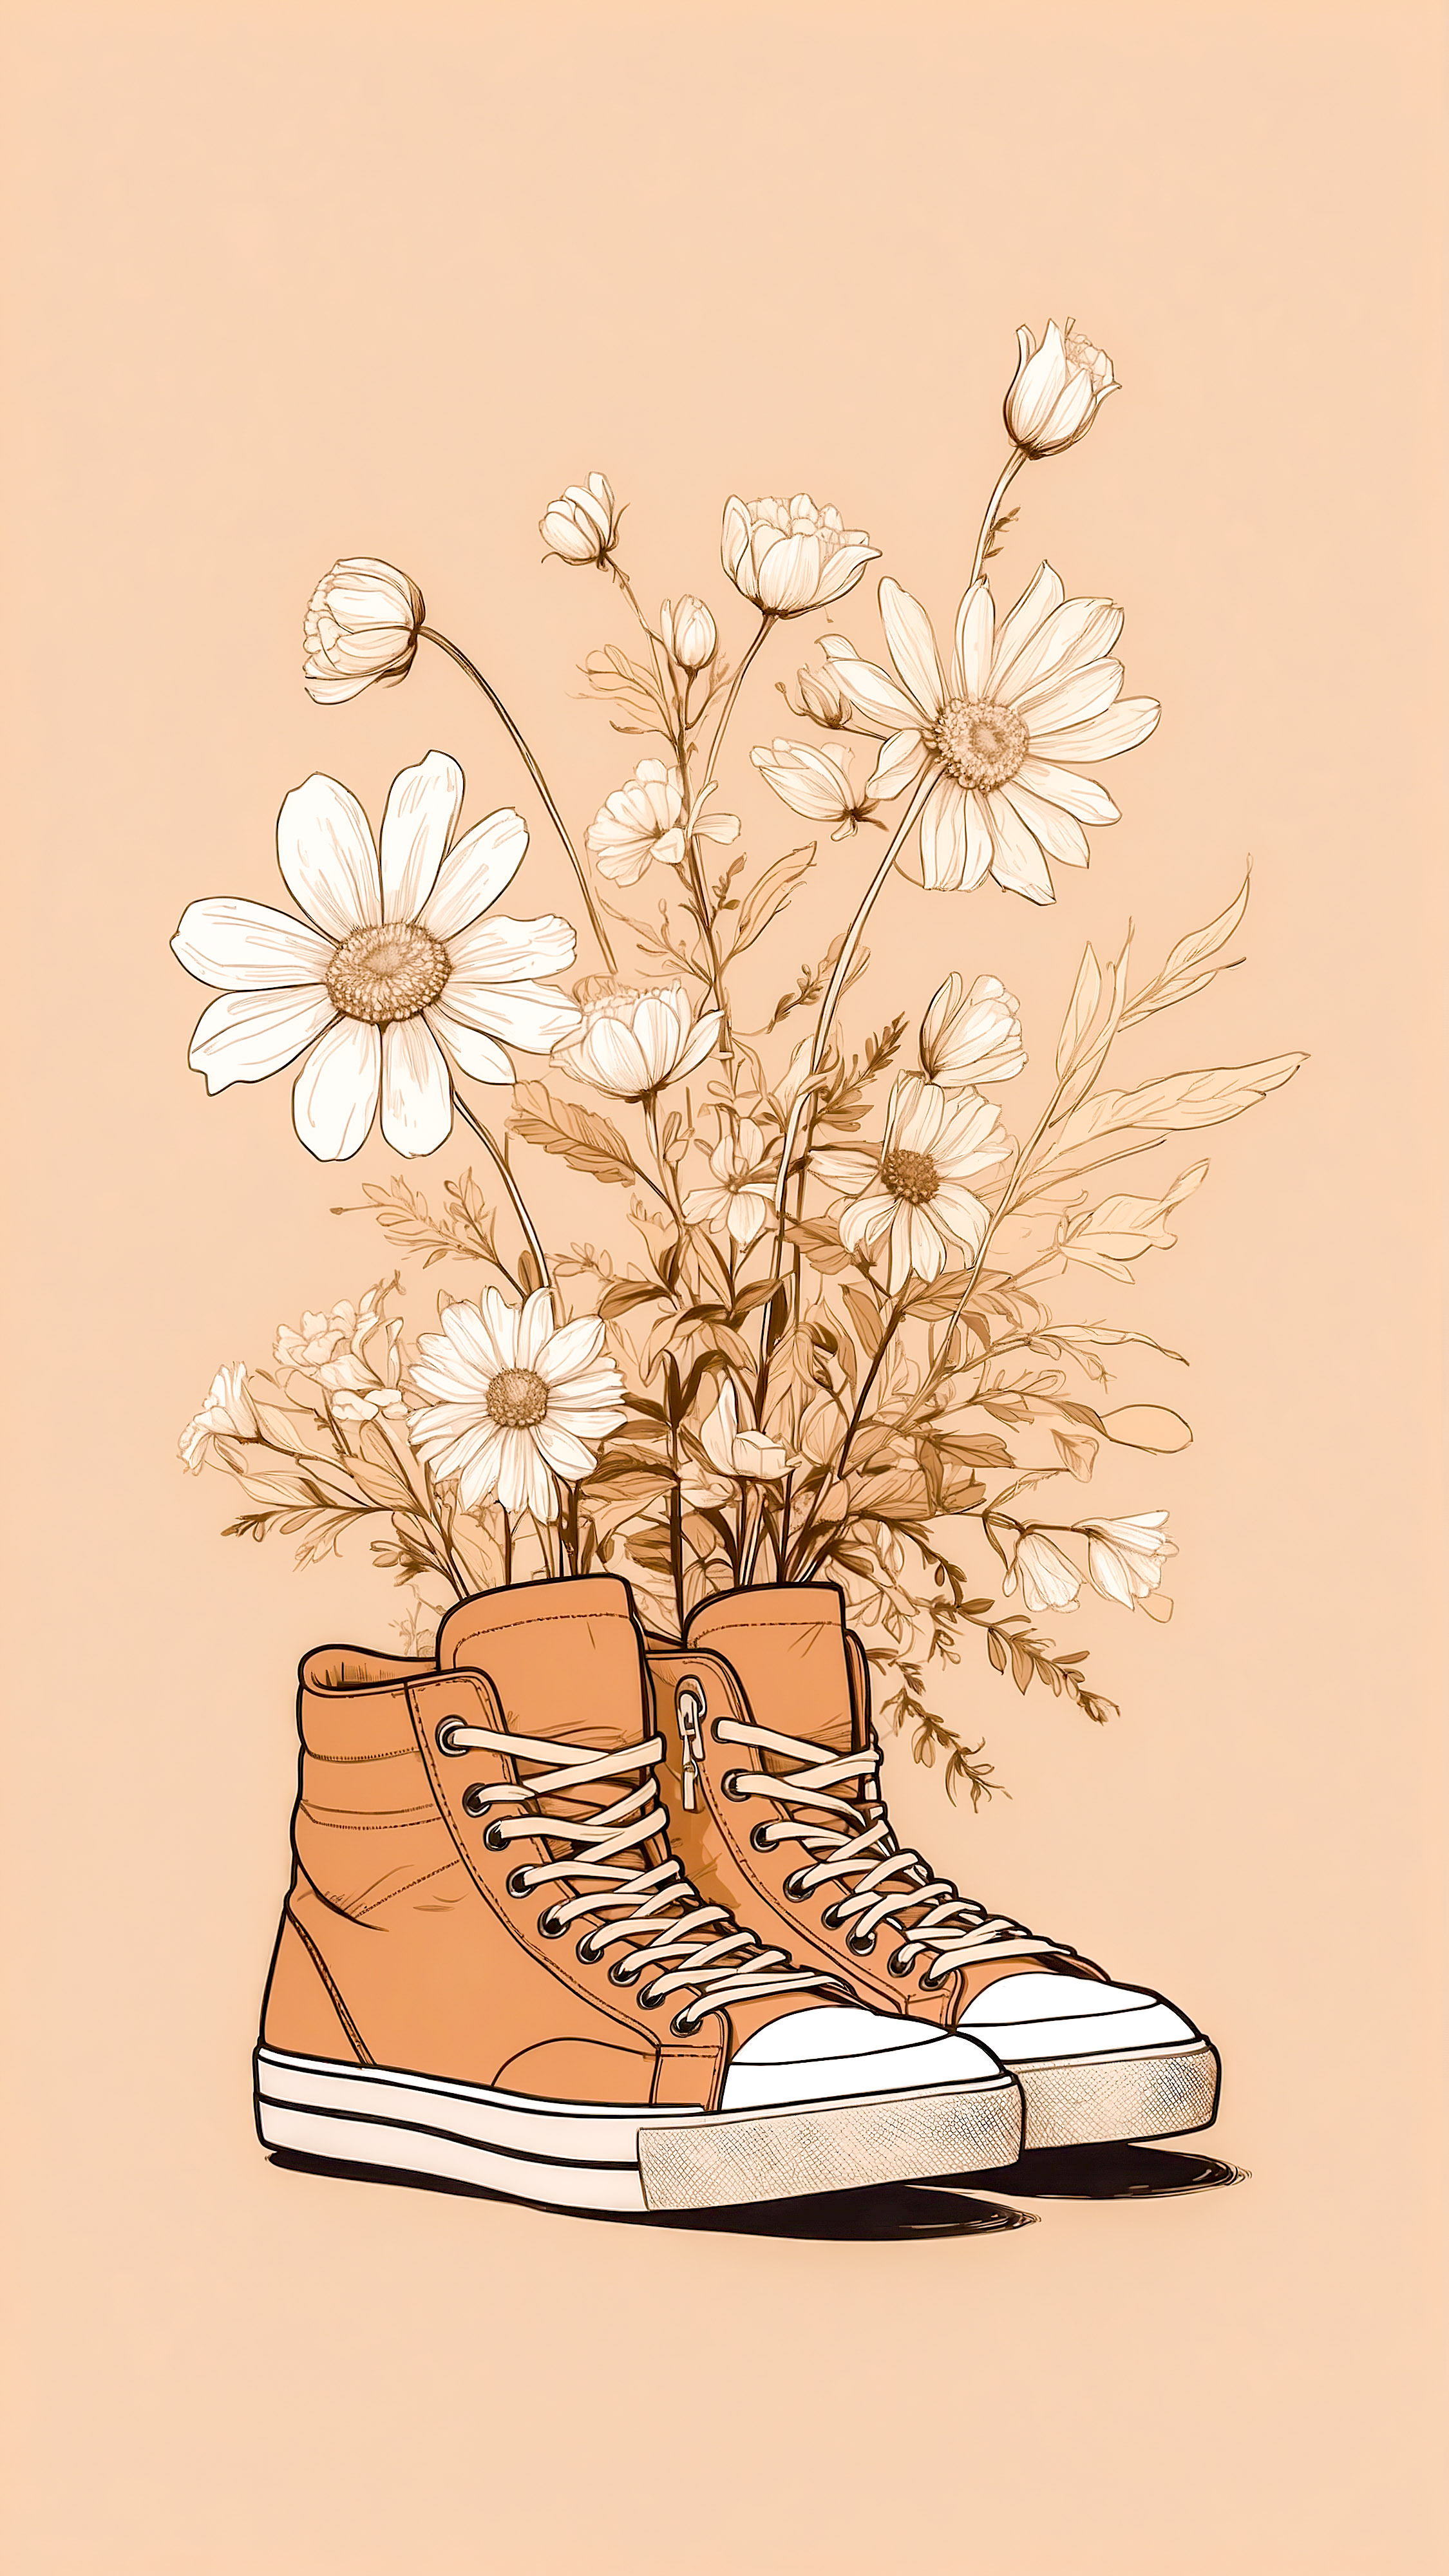 Apportez la beauté de la simplicité à votre iPhone avec des fonds d'écran simples mettant en vedette une paire de baskets brunes et blanches avec des fleurs qui en jaillissent sur un arrière-plan beige. 